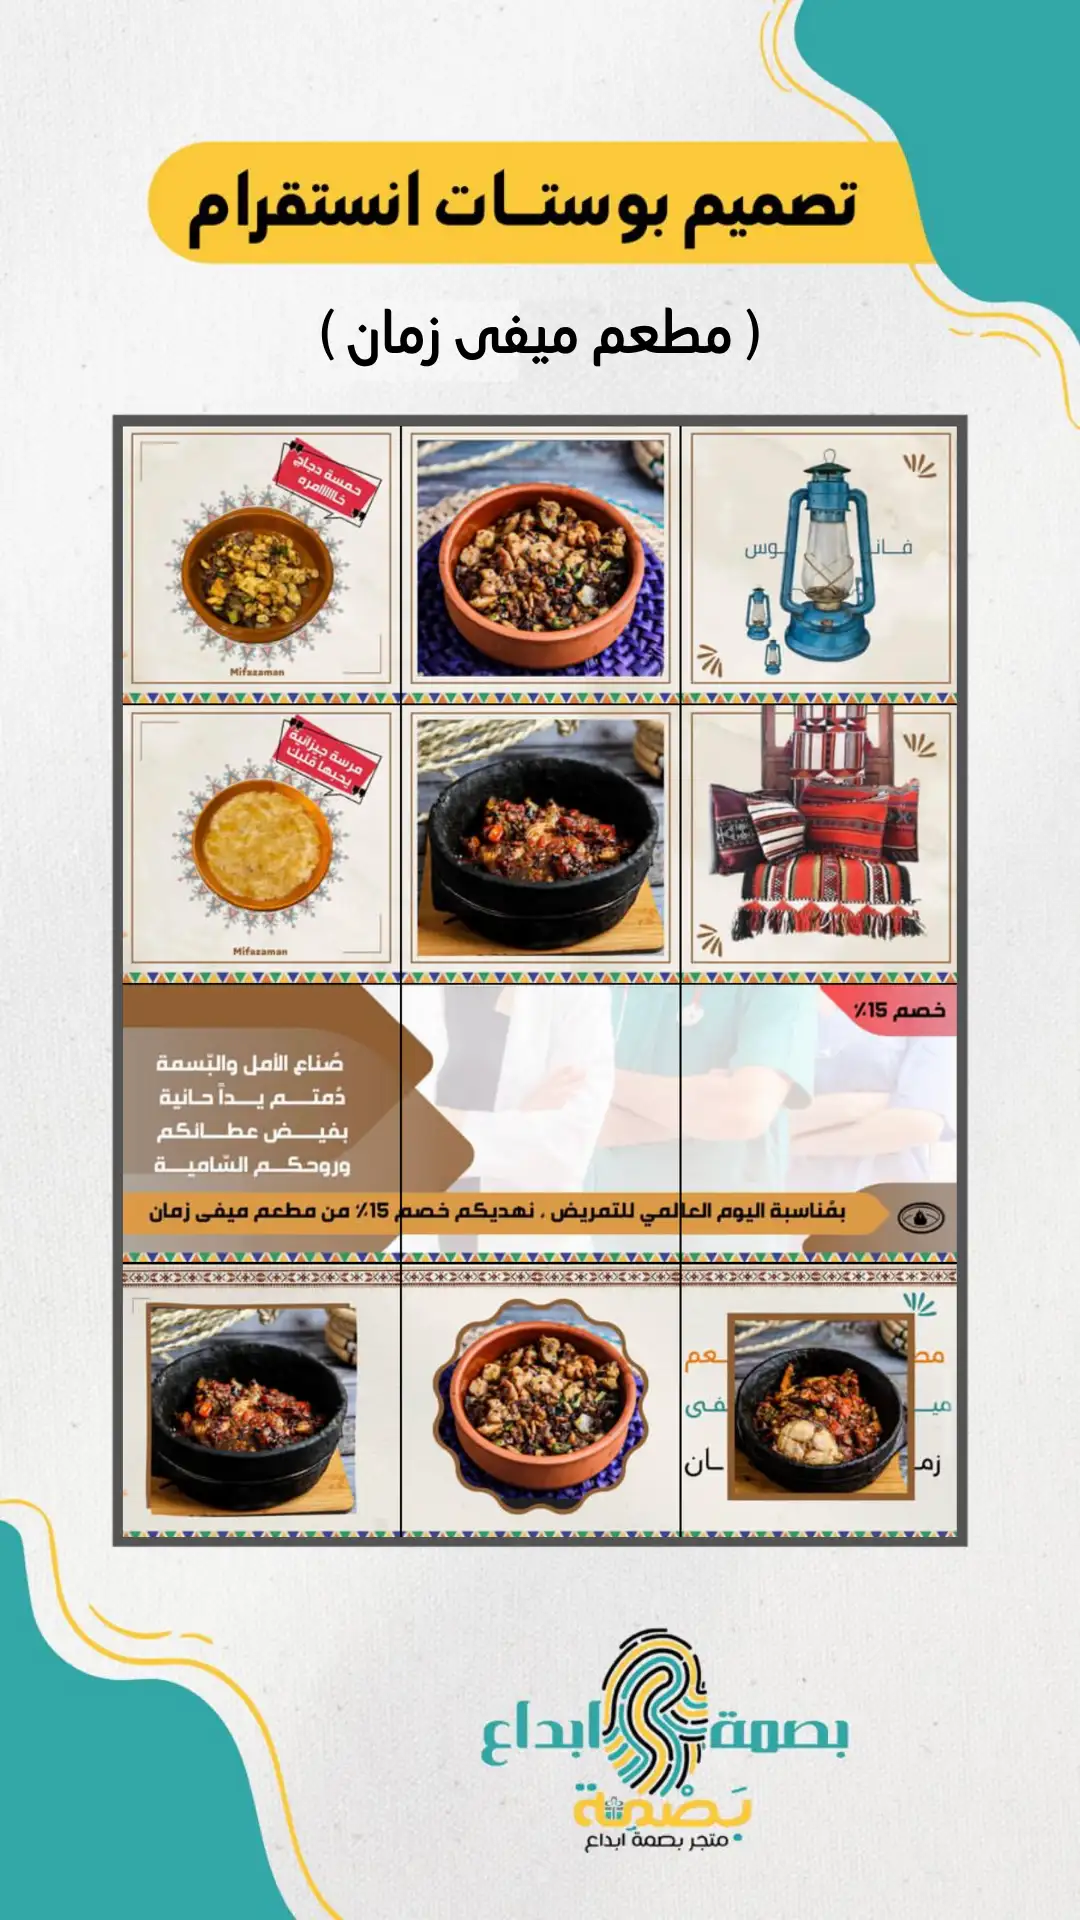 تصميم بوستات بطابع شعبي لمطعم ميفى زمان 